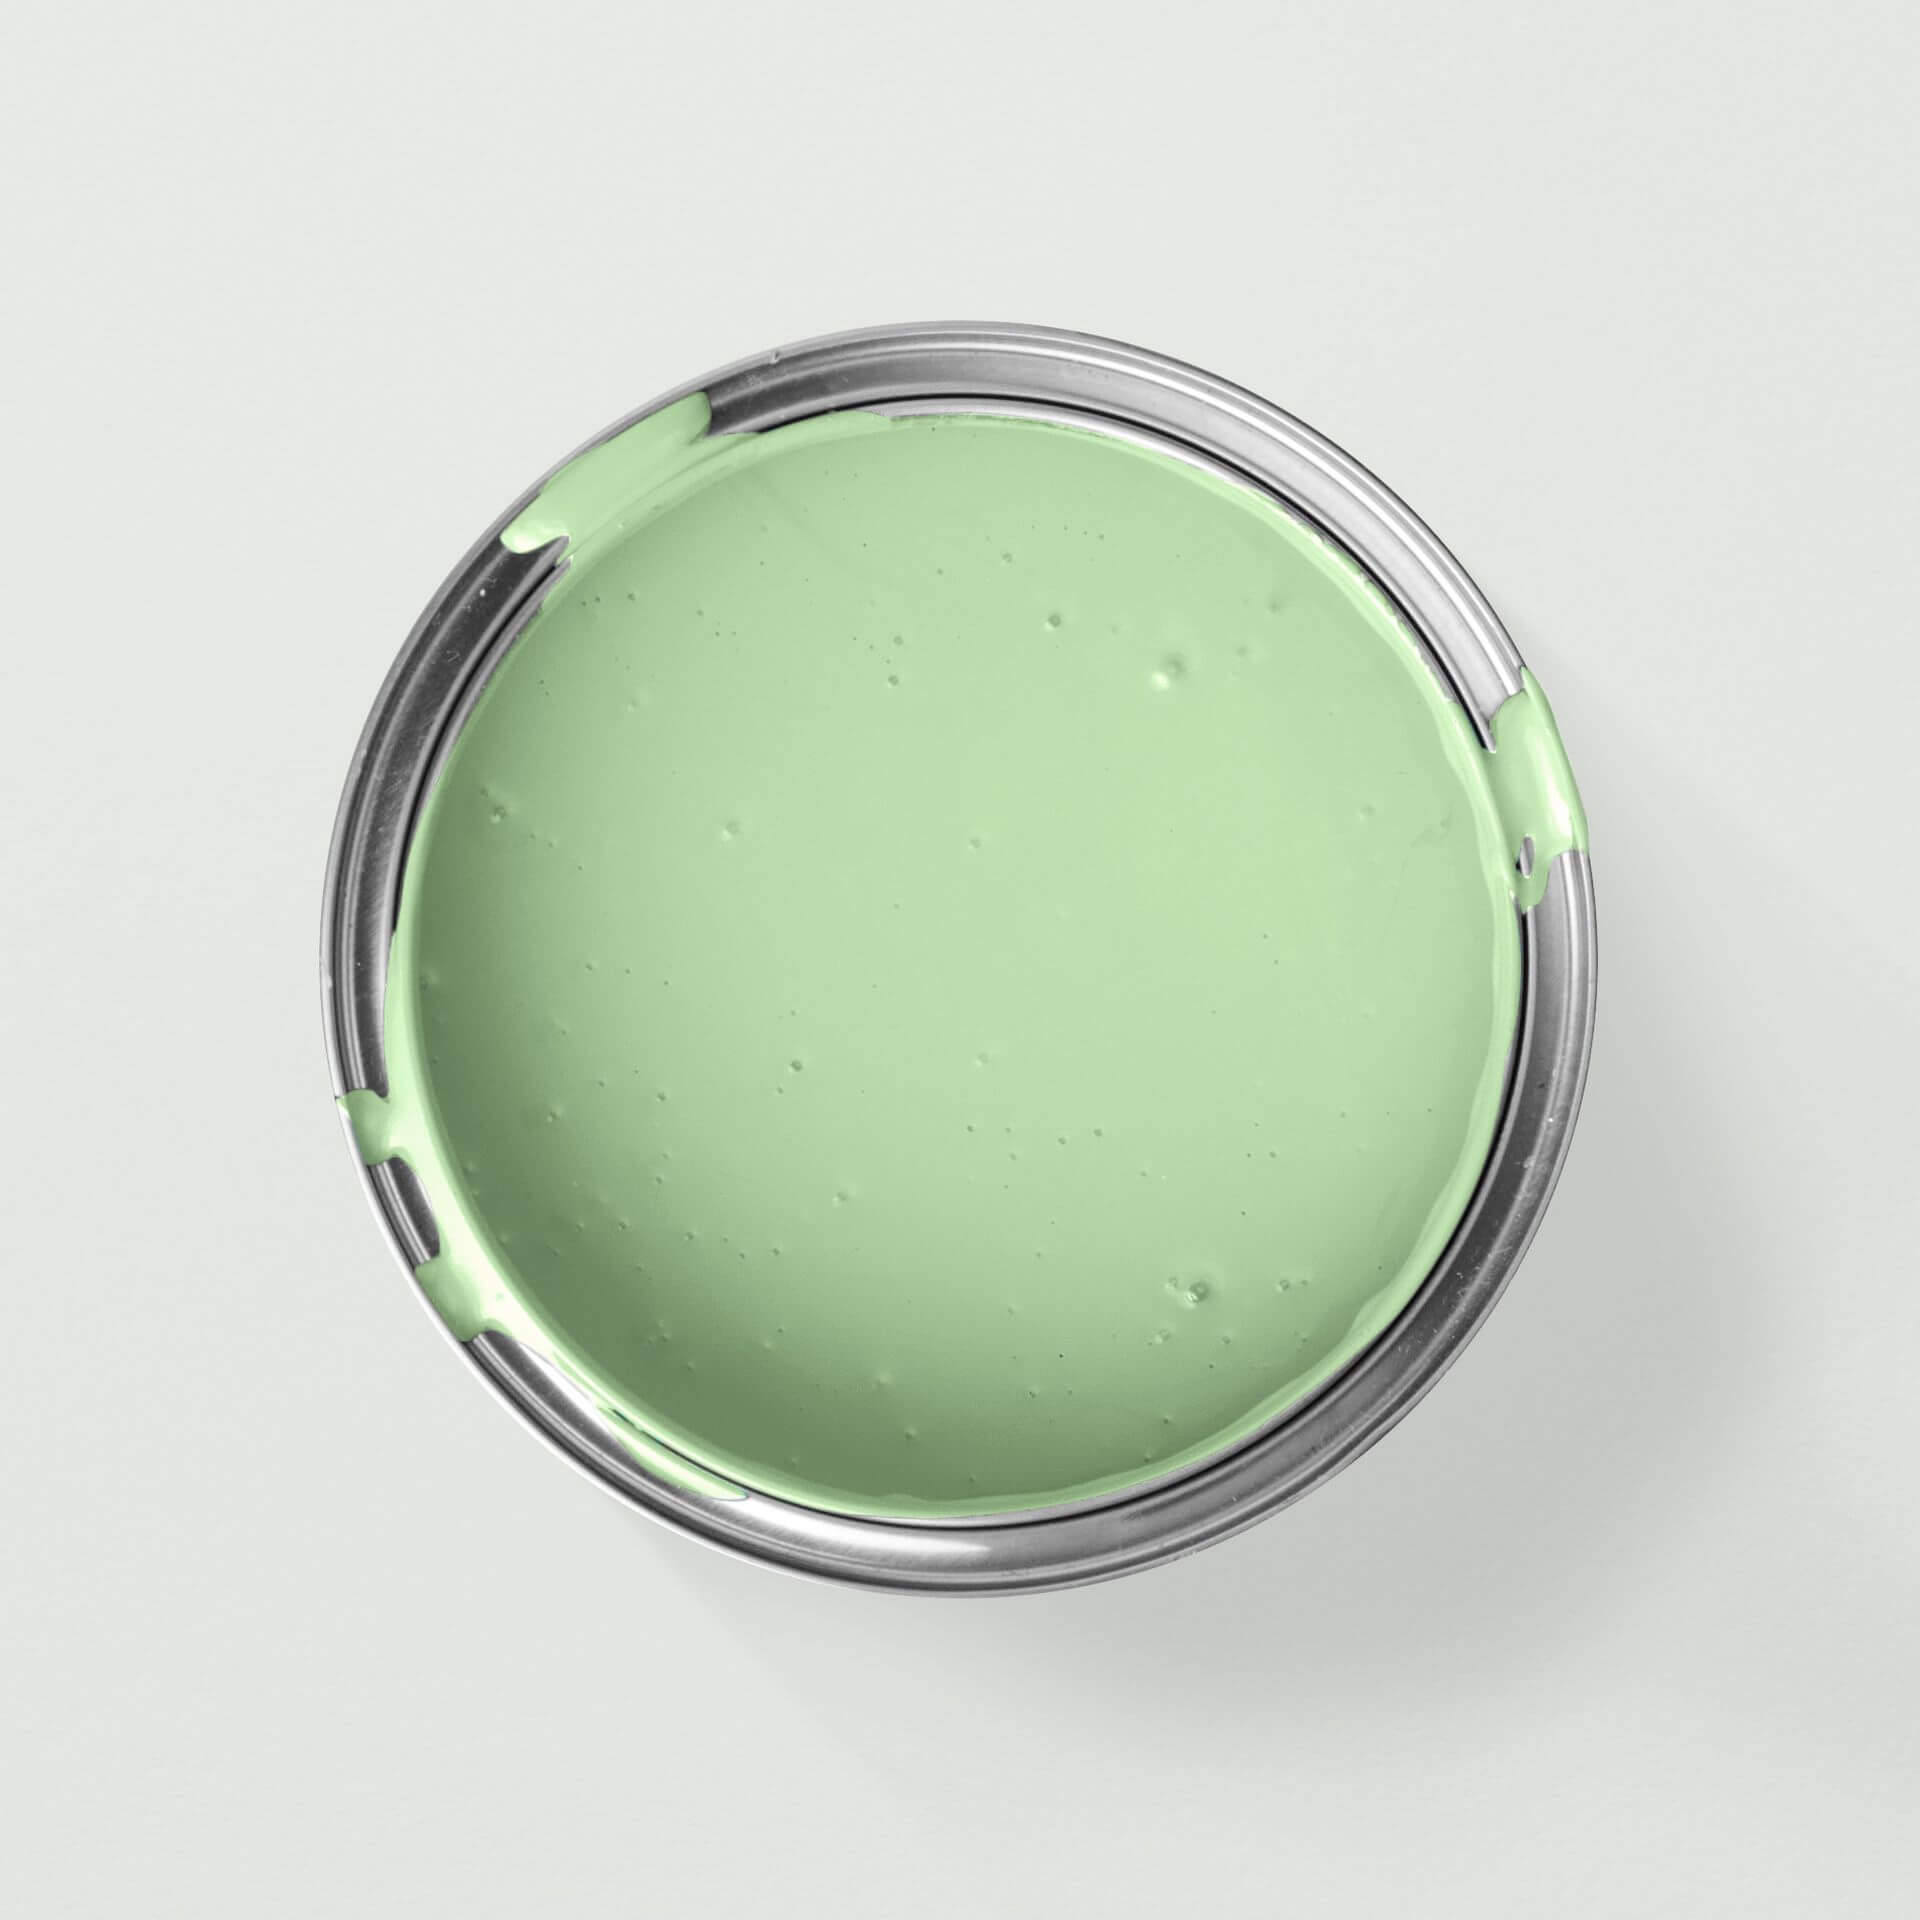 MissPompadour Grün mit Limette - Die Nützliche 1L